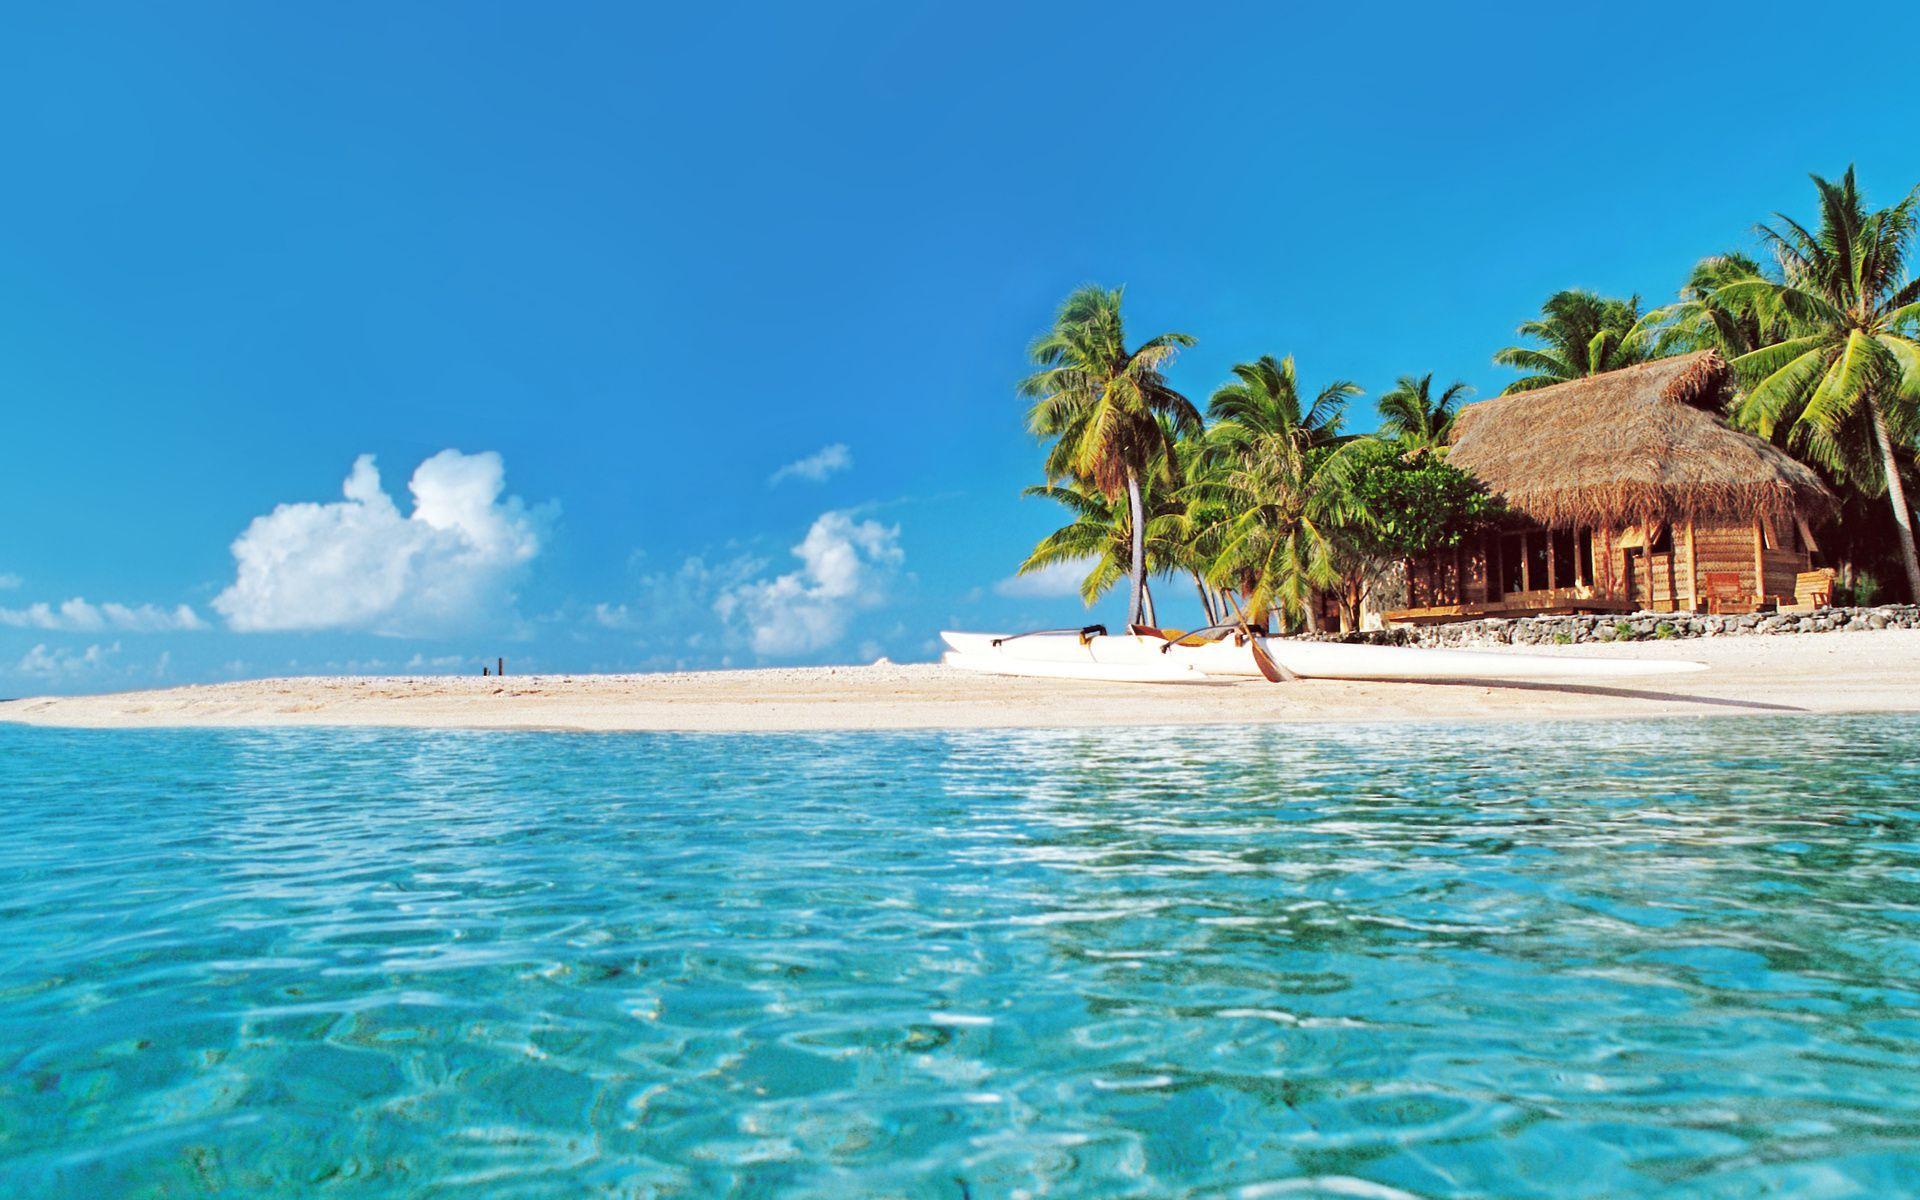 Hình nền bãi biển Tahiti sẽ đưa bạn đến với một hòn đảo đẹp như mơ, nơi có nắng vàng rực rỡ, nước biển trong xanh và những bãi cát trắng tinh. Tận dụng lợi thế của công nghệ để đưa Tahiti vào màn hình máy tính của bạn.